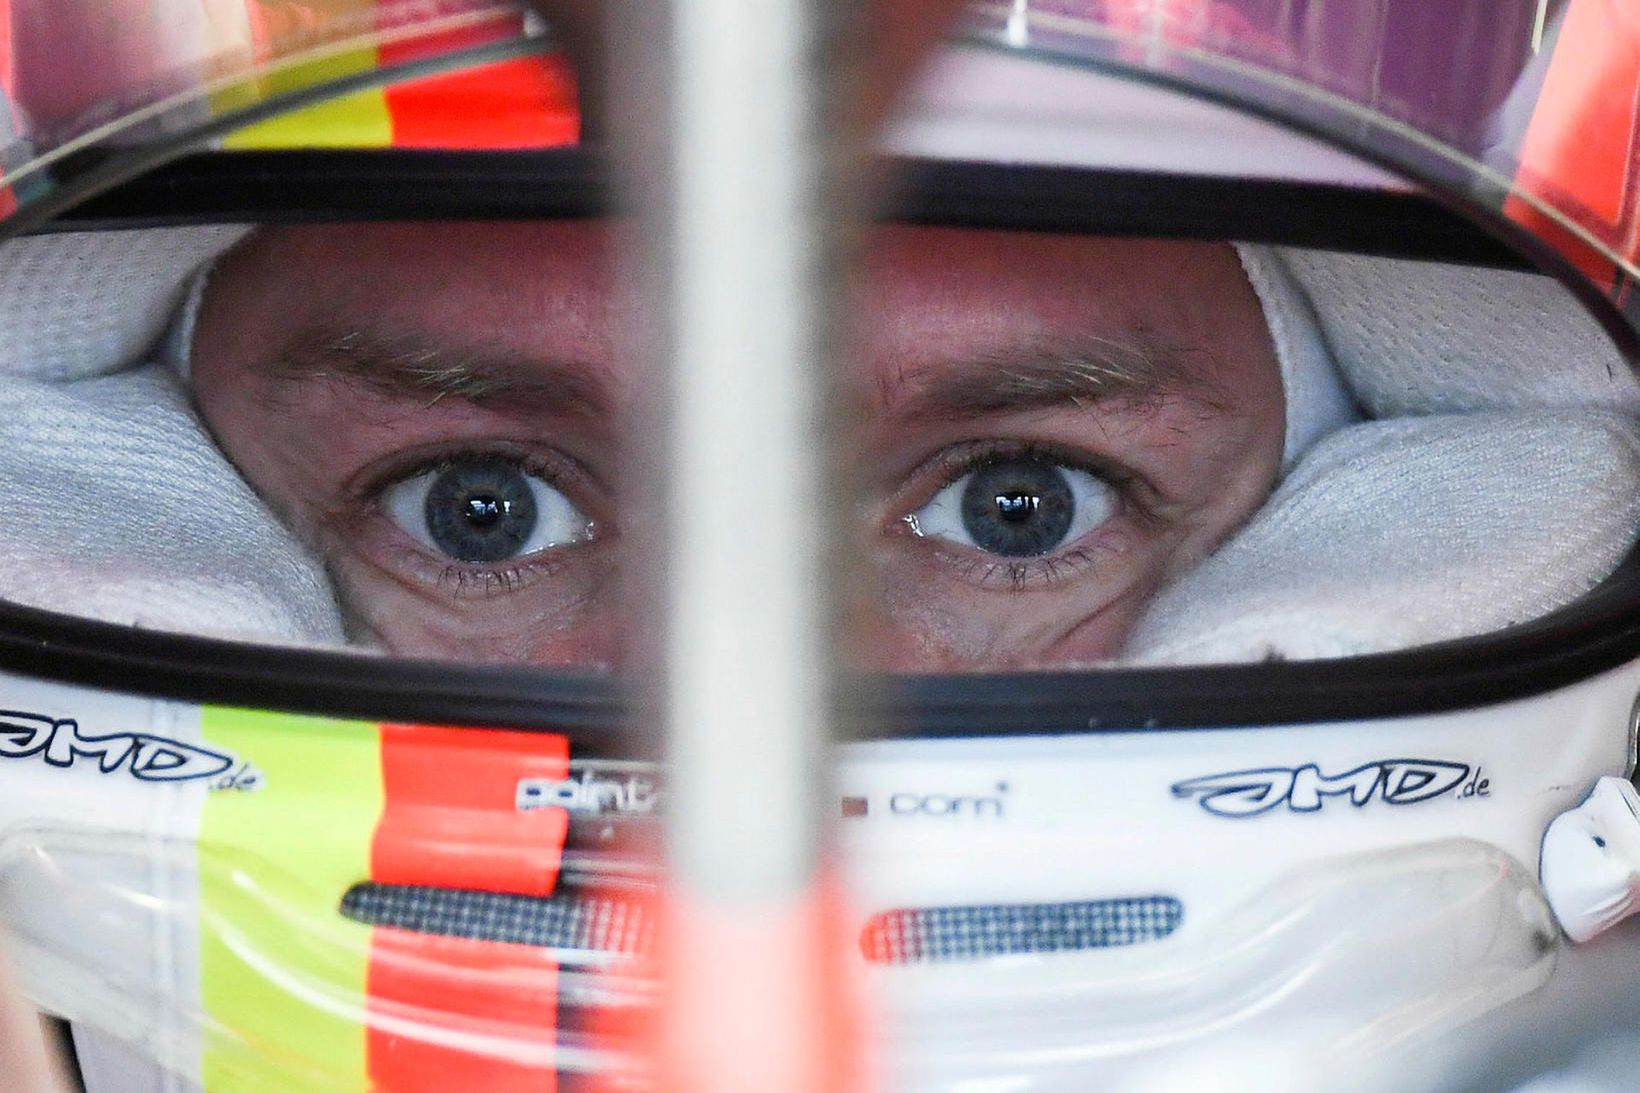 Sebastian Vettel einbeittur á svip í bíl sínum milli aksturslota …